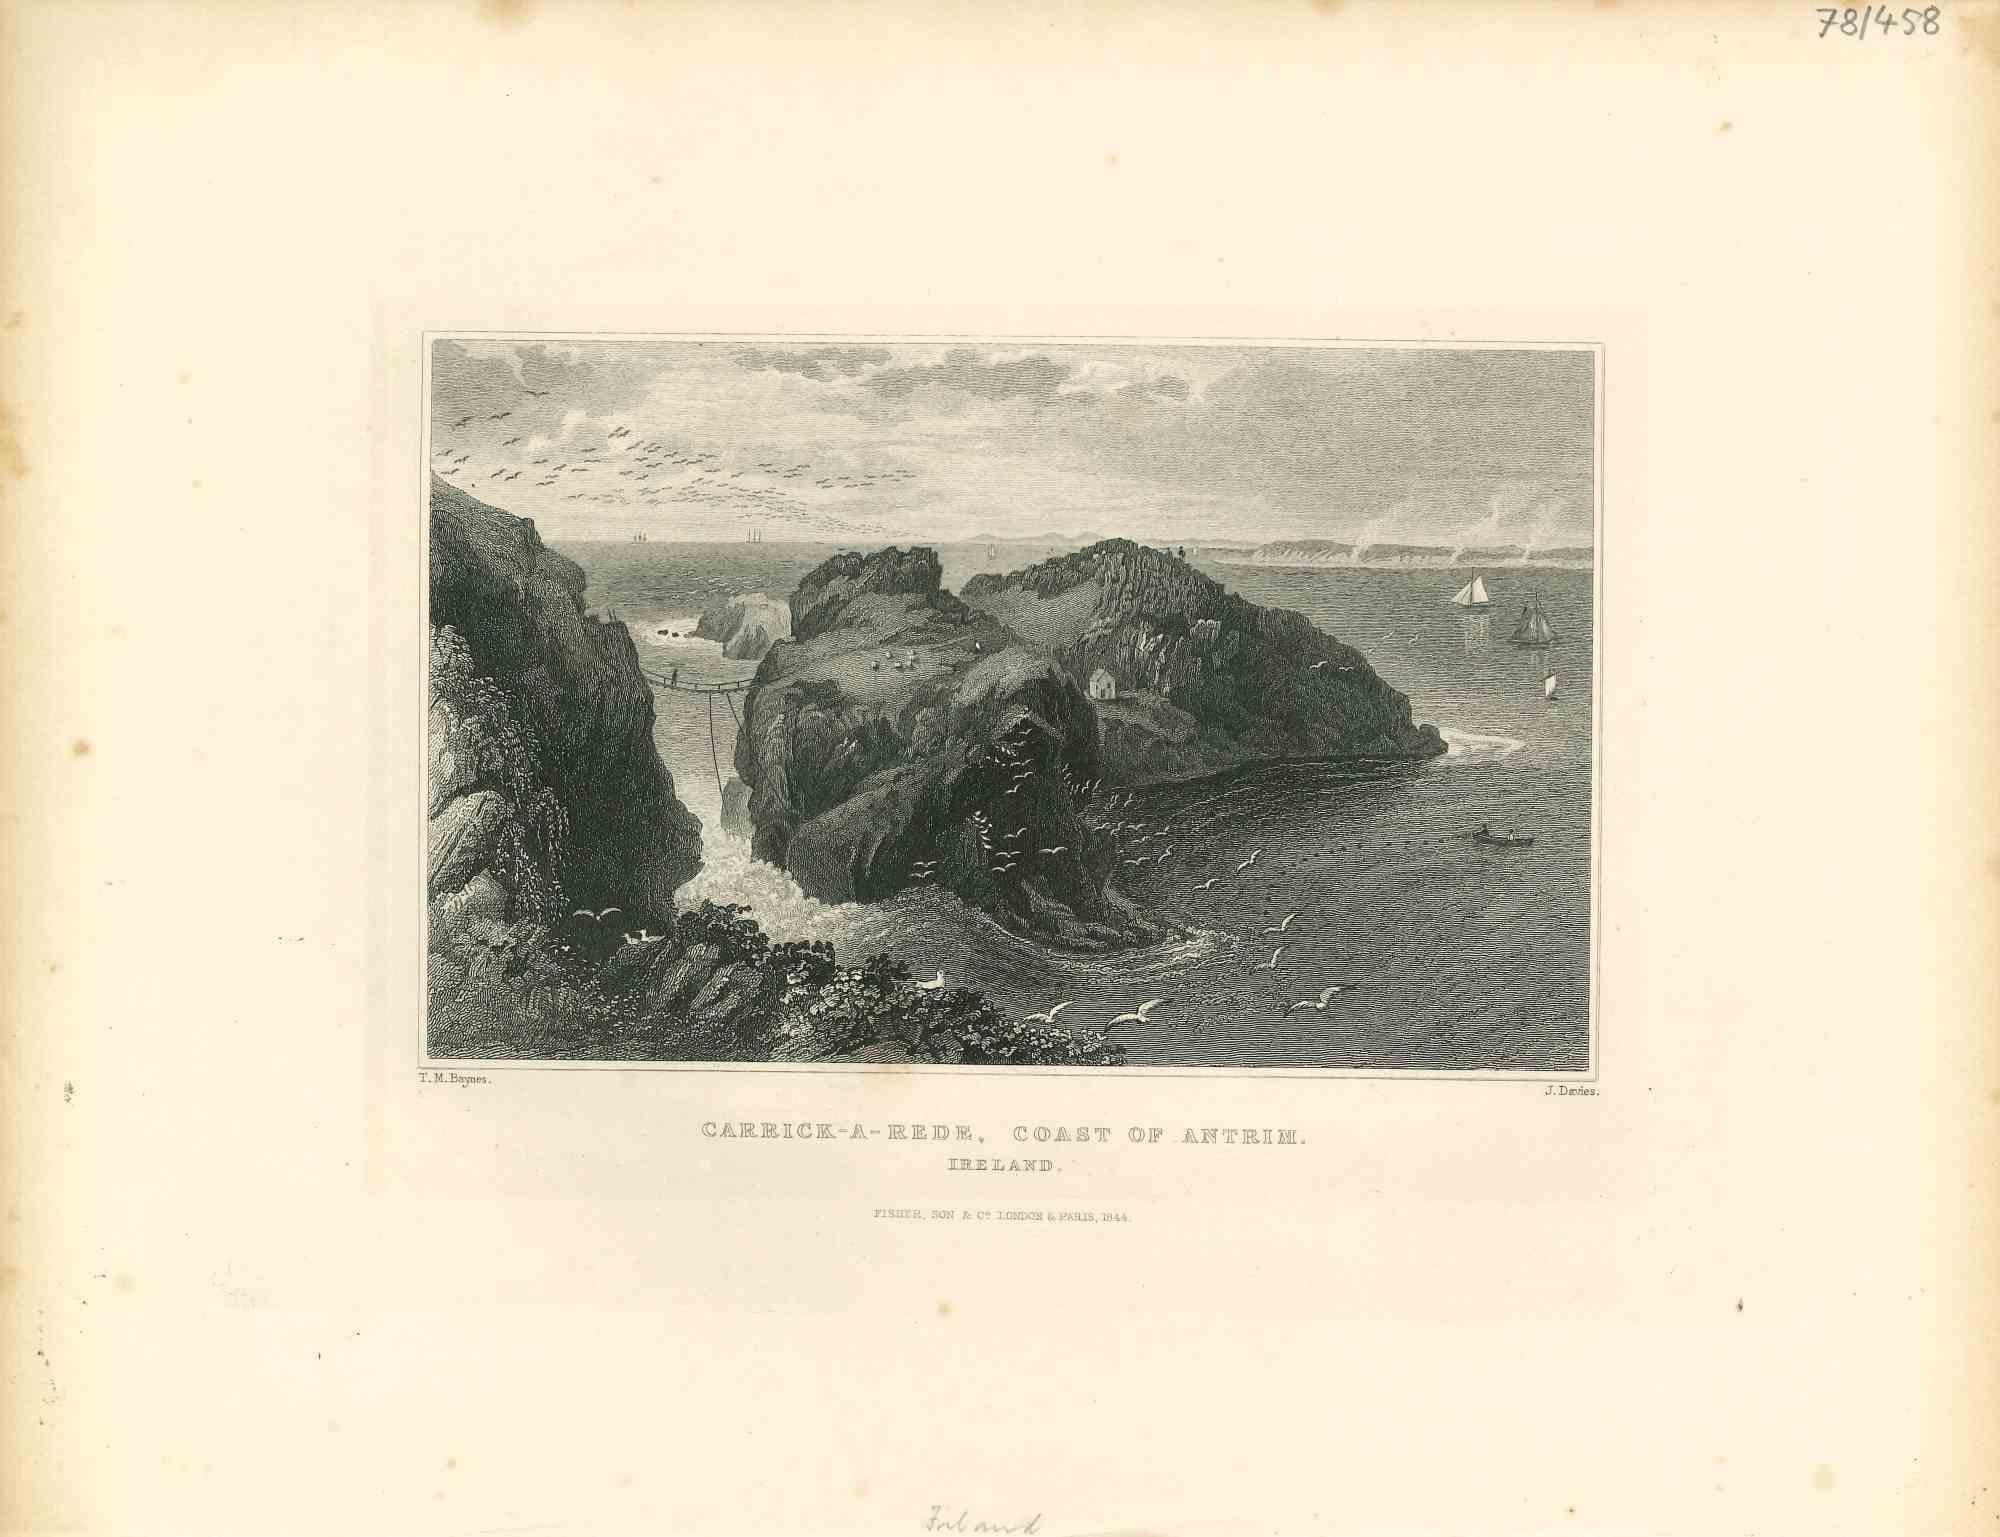 Unknown Landscape Print – Carrick-a-Rede, Küste des Antrims – Originallithographie – Mitte des 19. Jahrhunderts